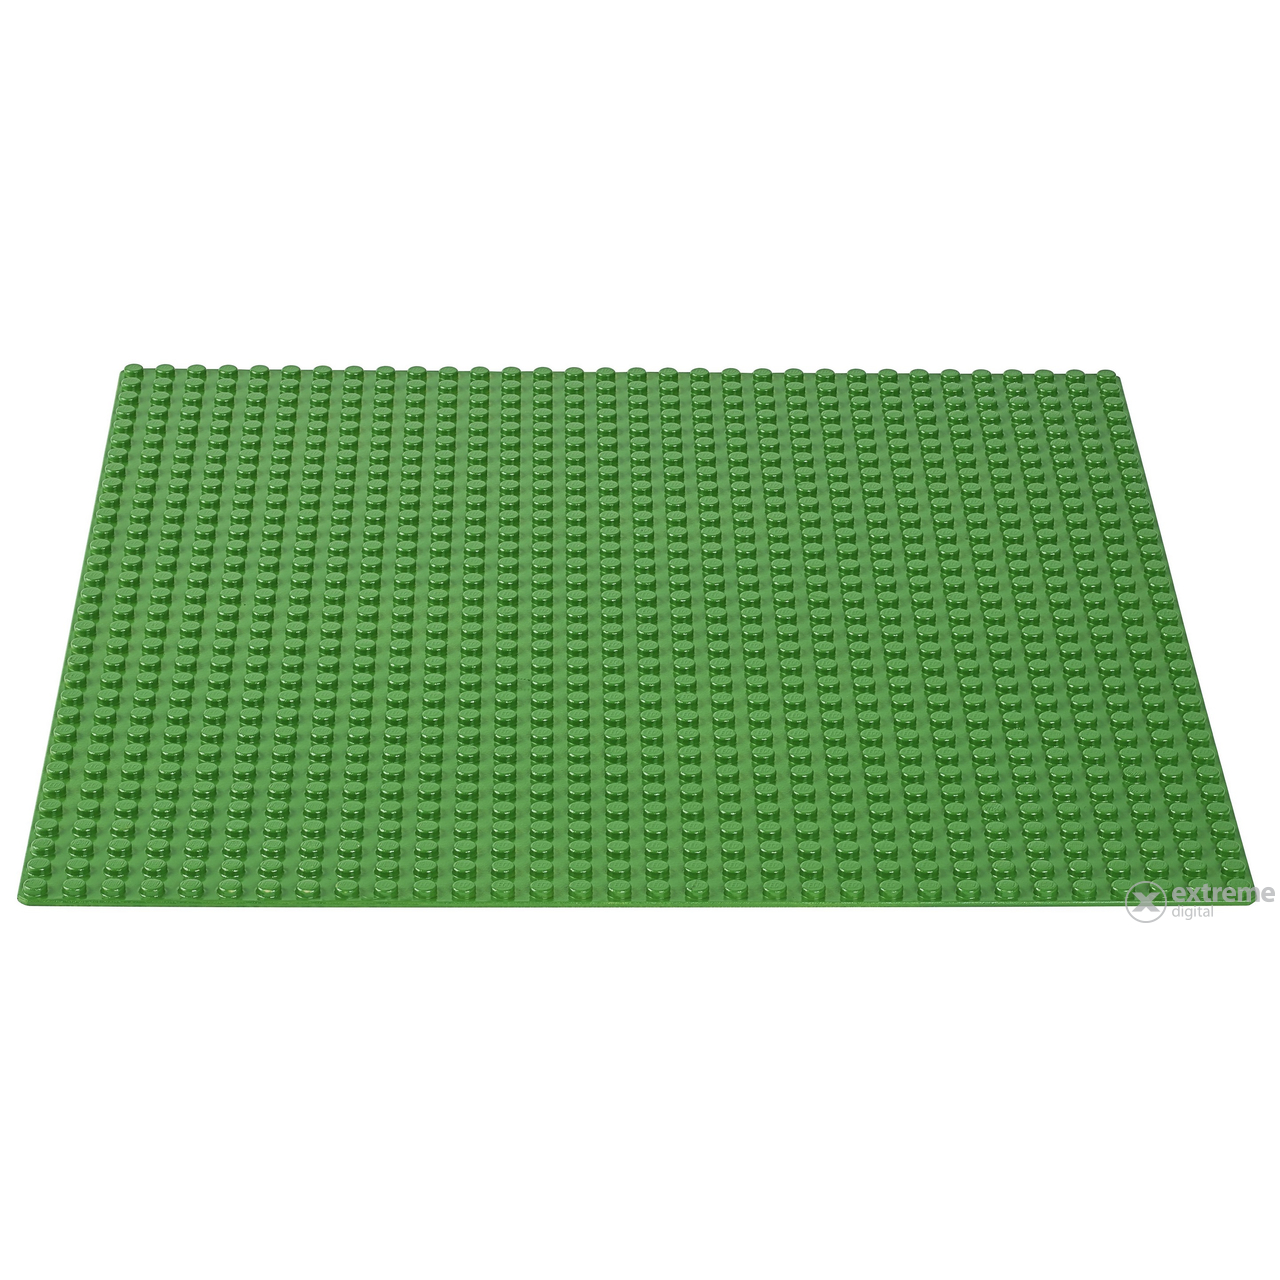 LEGO® Classic Зелена основна плочка  10700